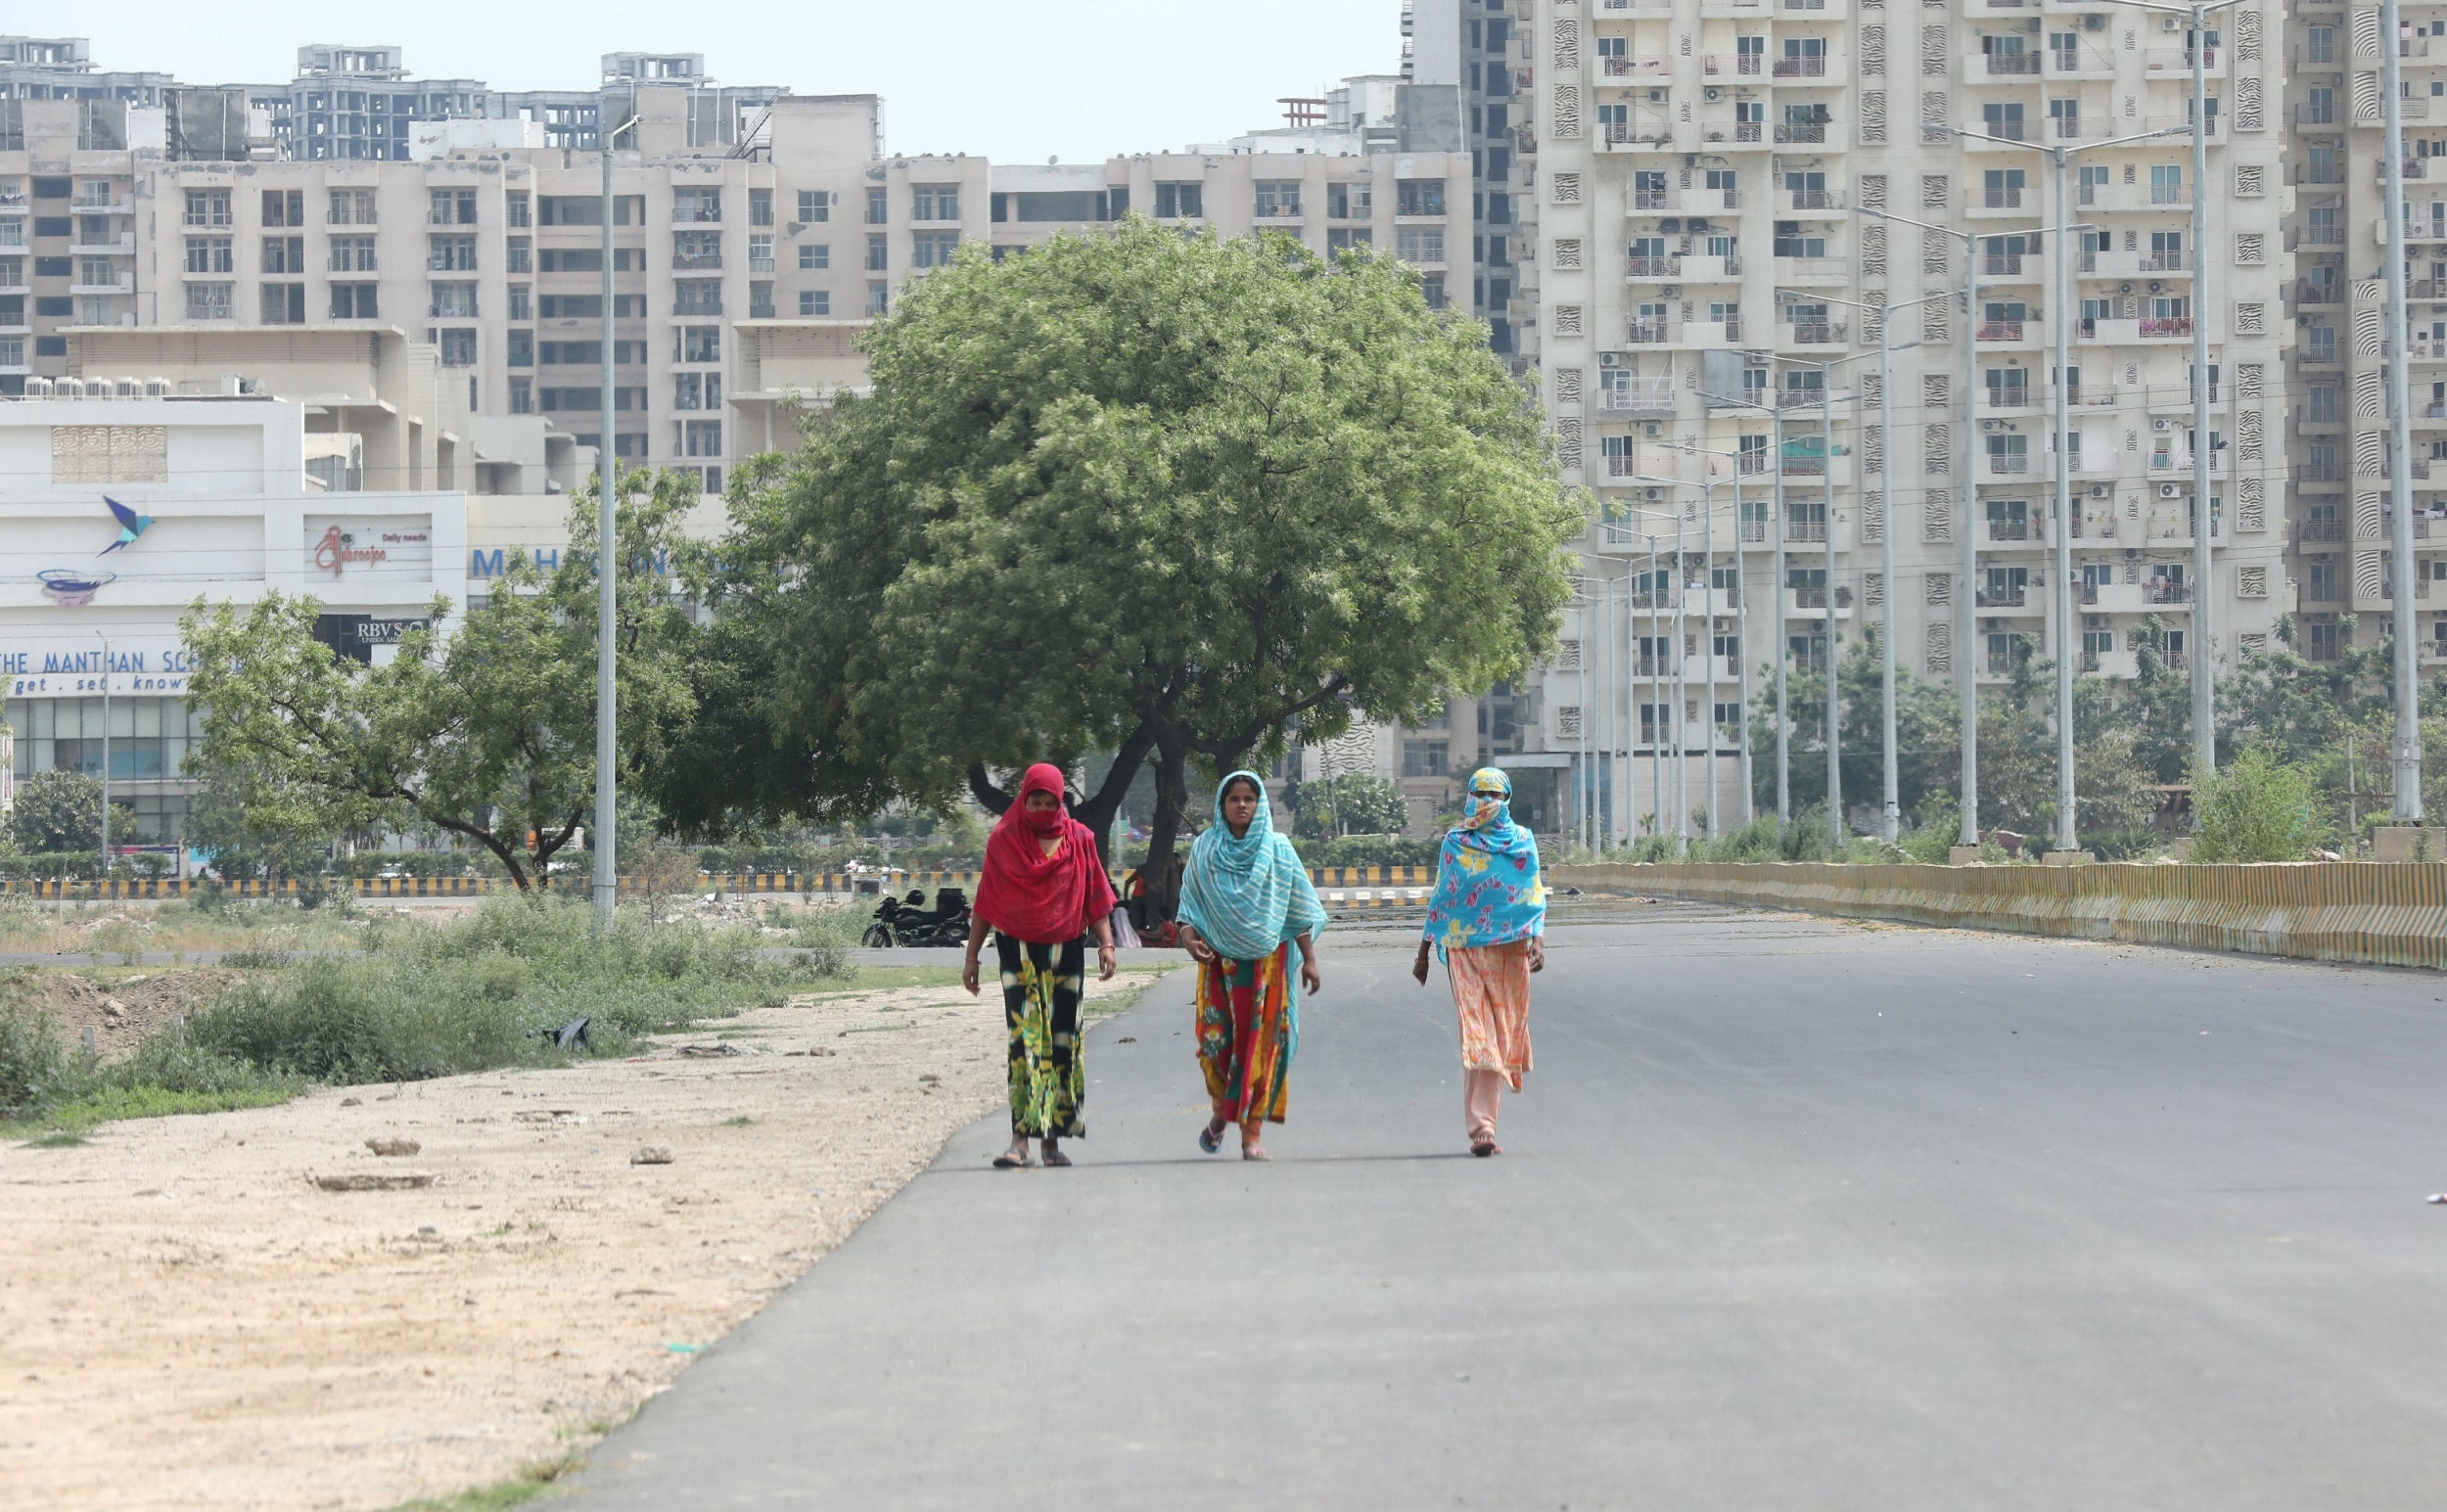 Women walk in the Noida area near New Delhi